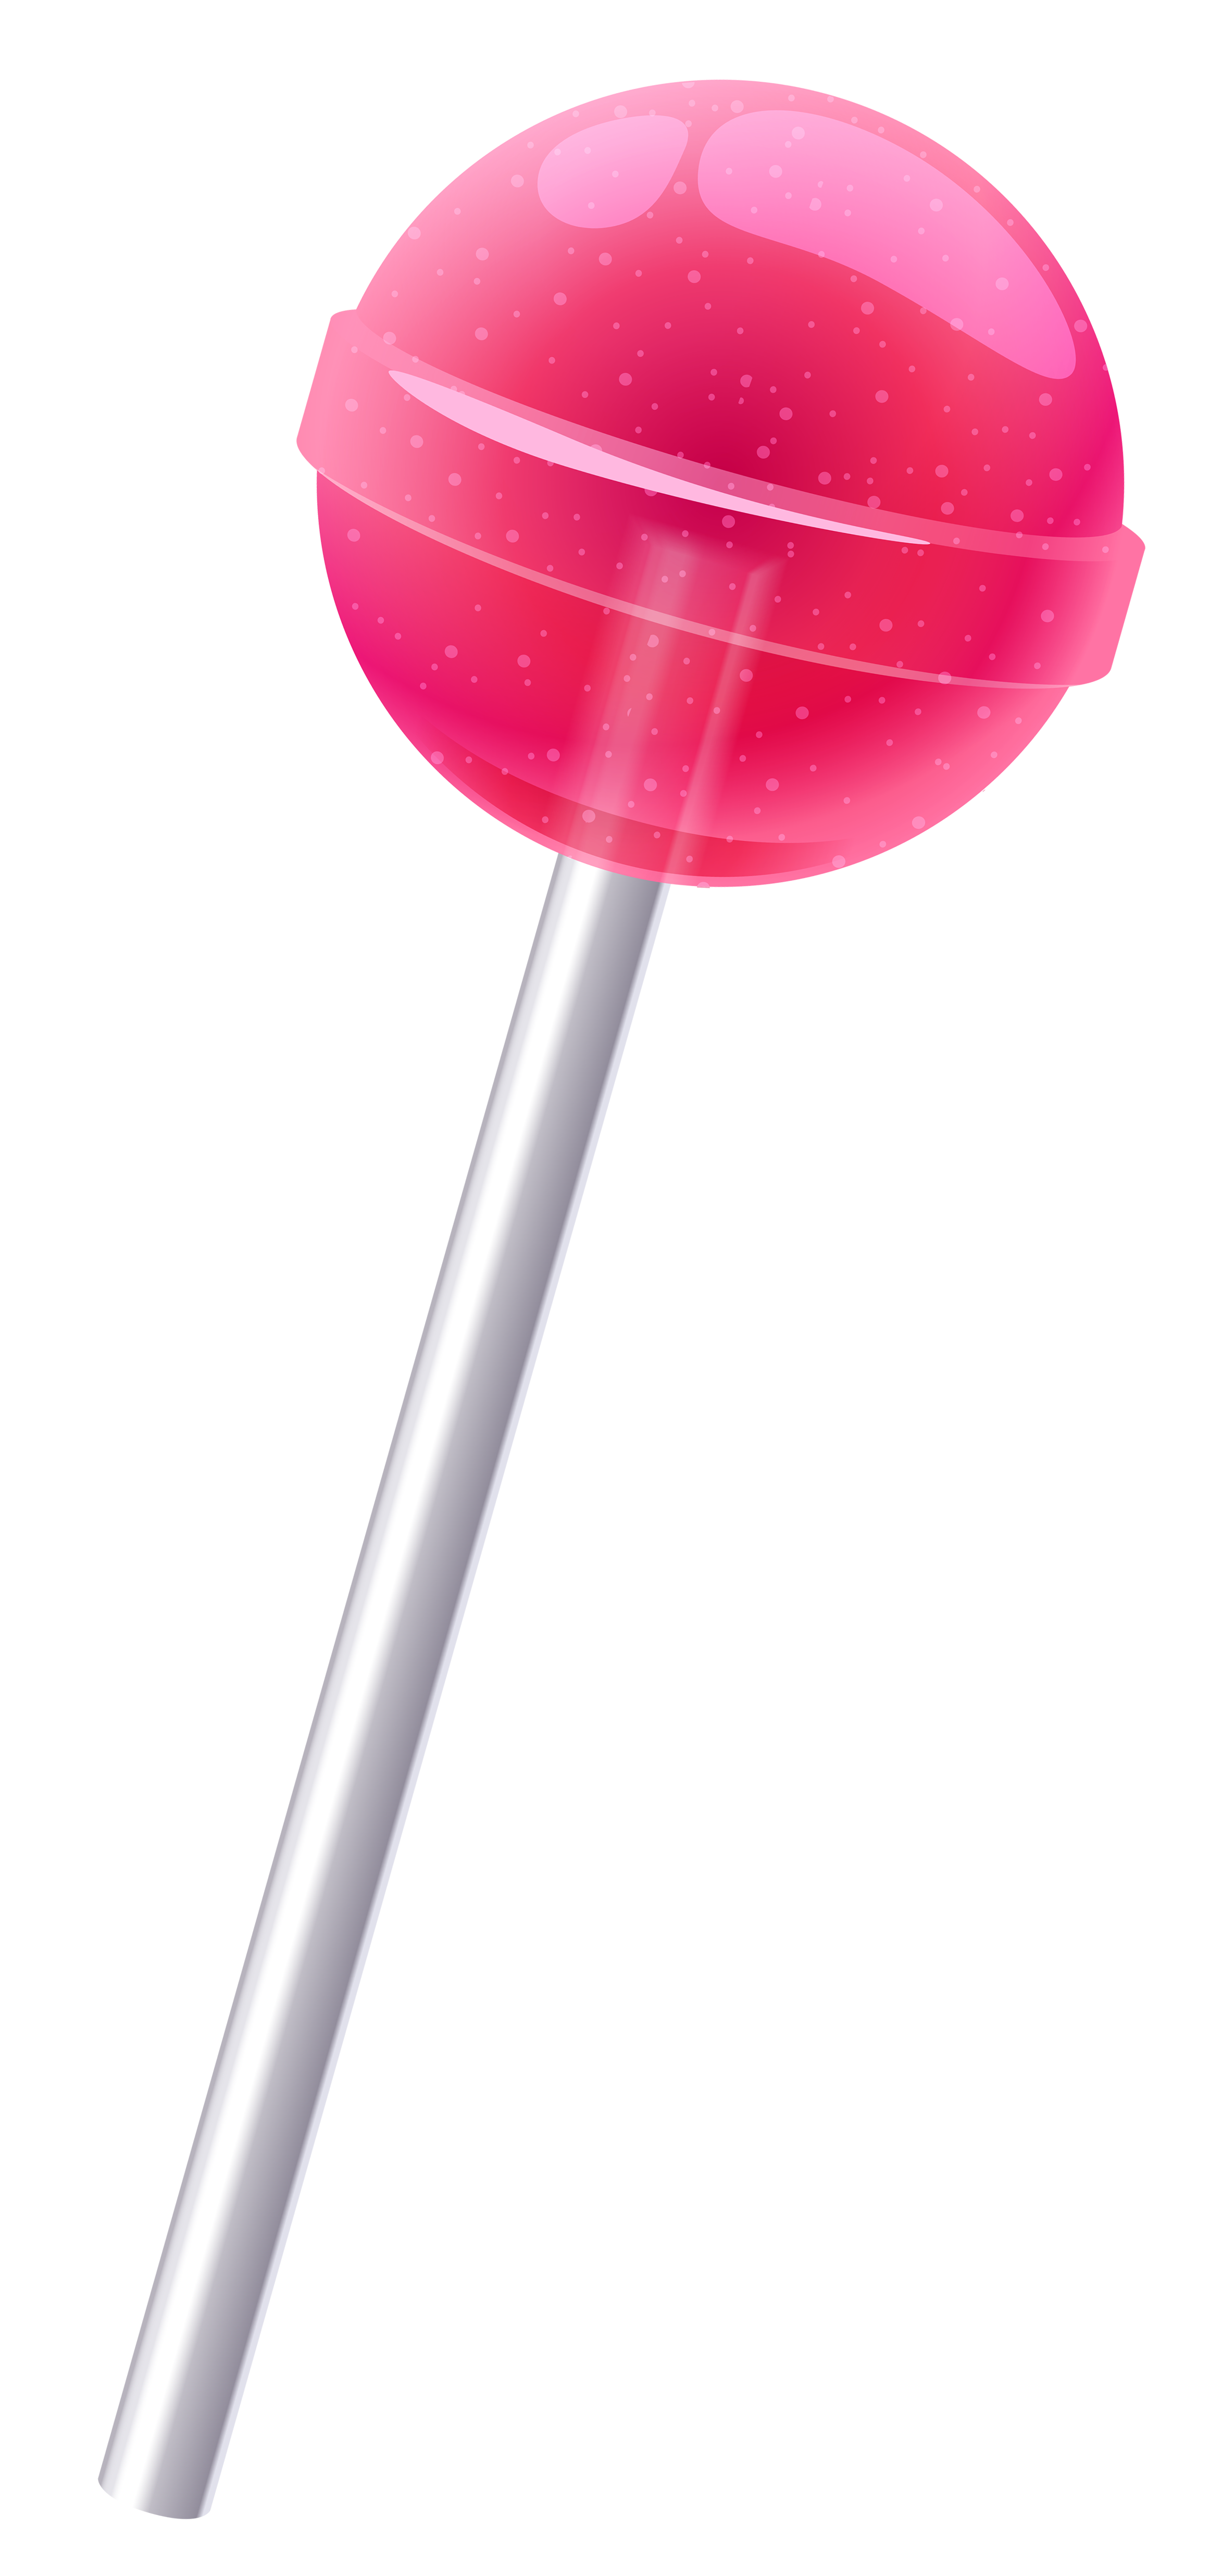 Pink Lollipop Picture Transparent Image Clipart